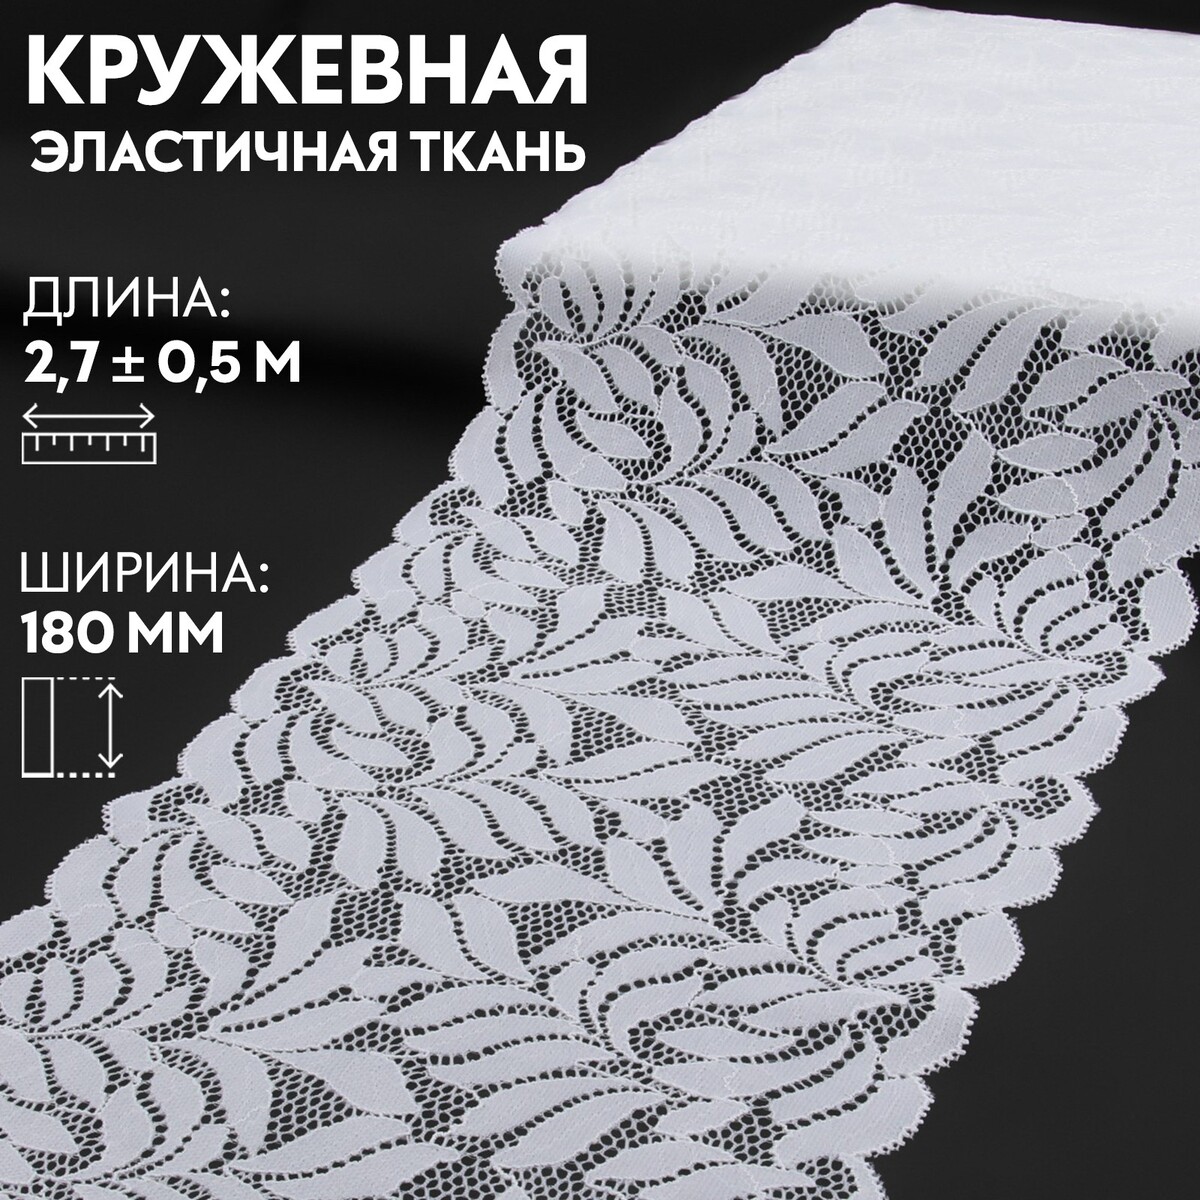 Кружевная эластичная ткань, 180 мм × 2,7 ± 0,5 м, цвет белый кружевная эластичная ткань 170 мм × 2 7 ± 0 5 м шоколадный